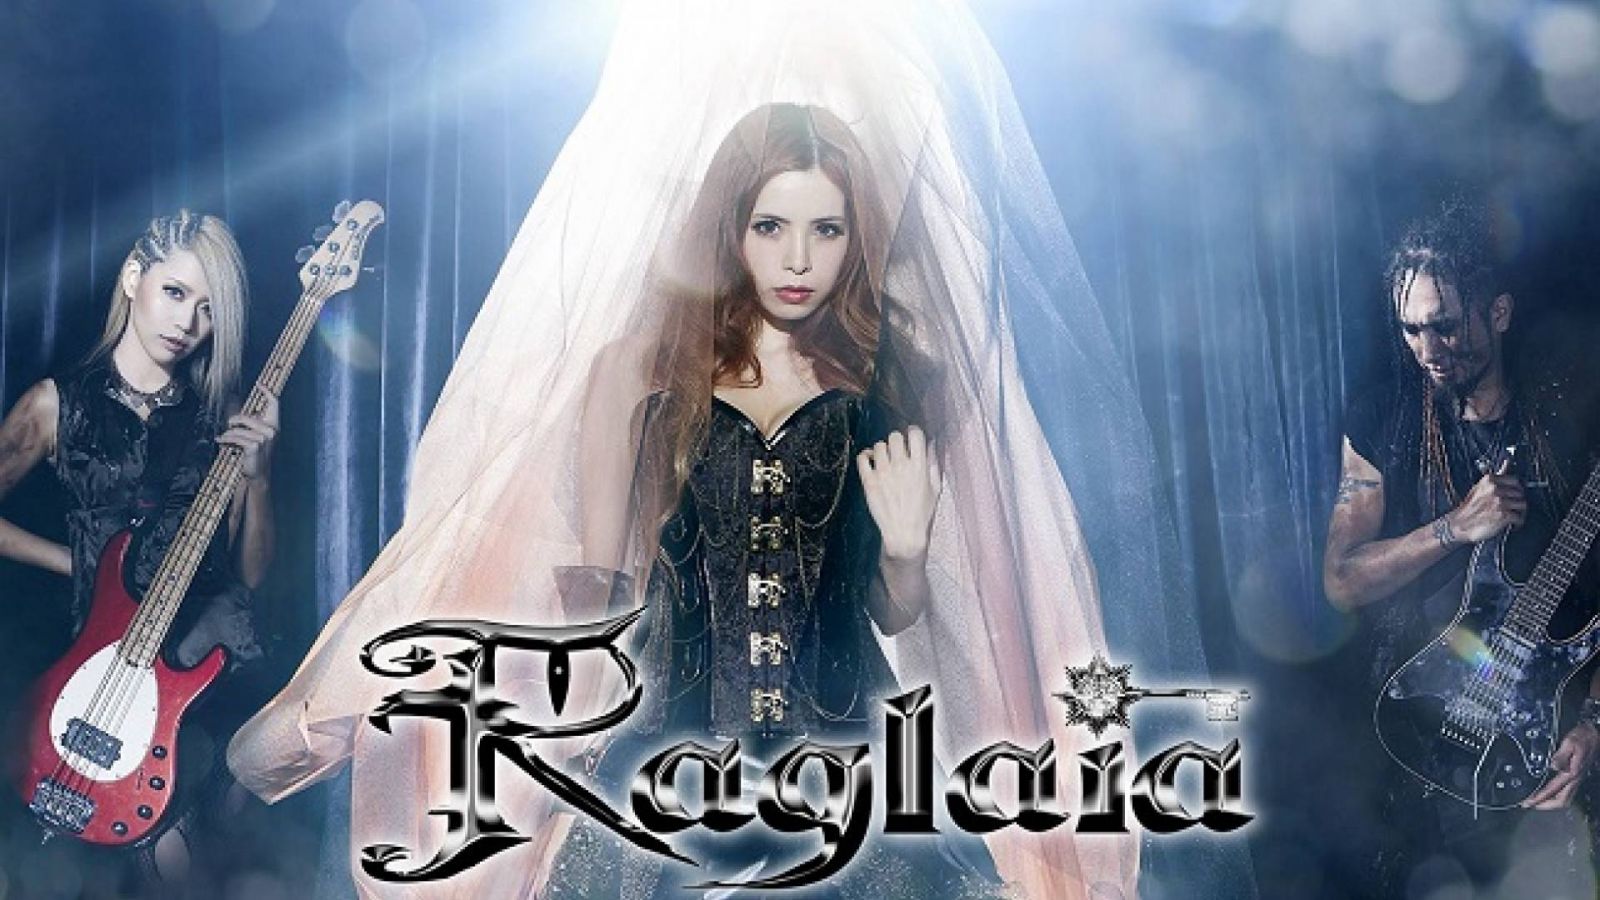 Update on Raglaia's New Single © Across Music / VAA